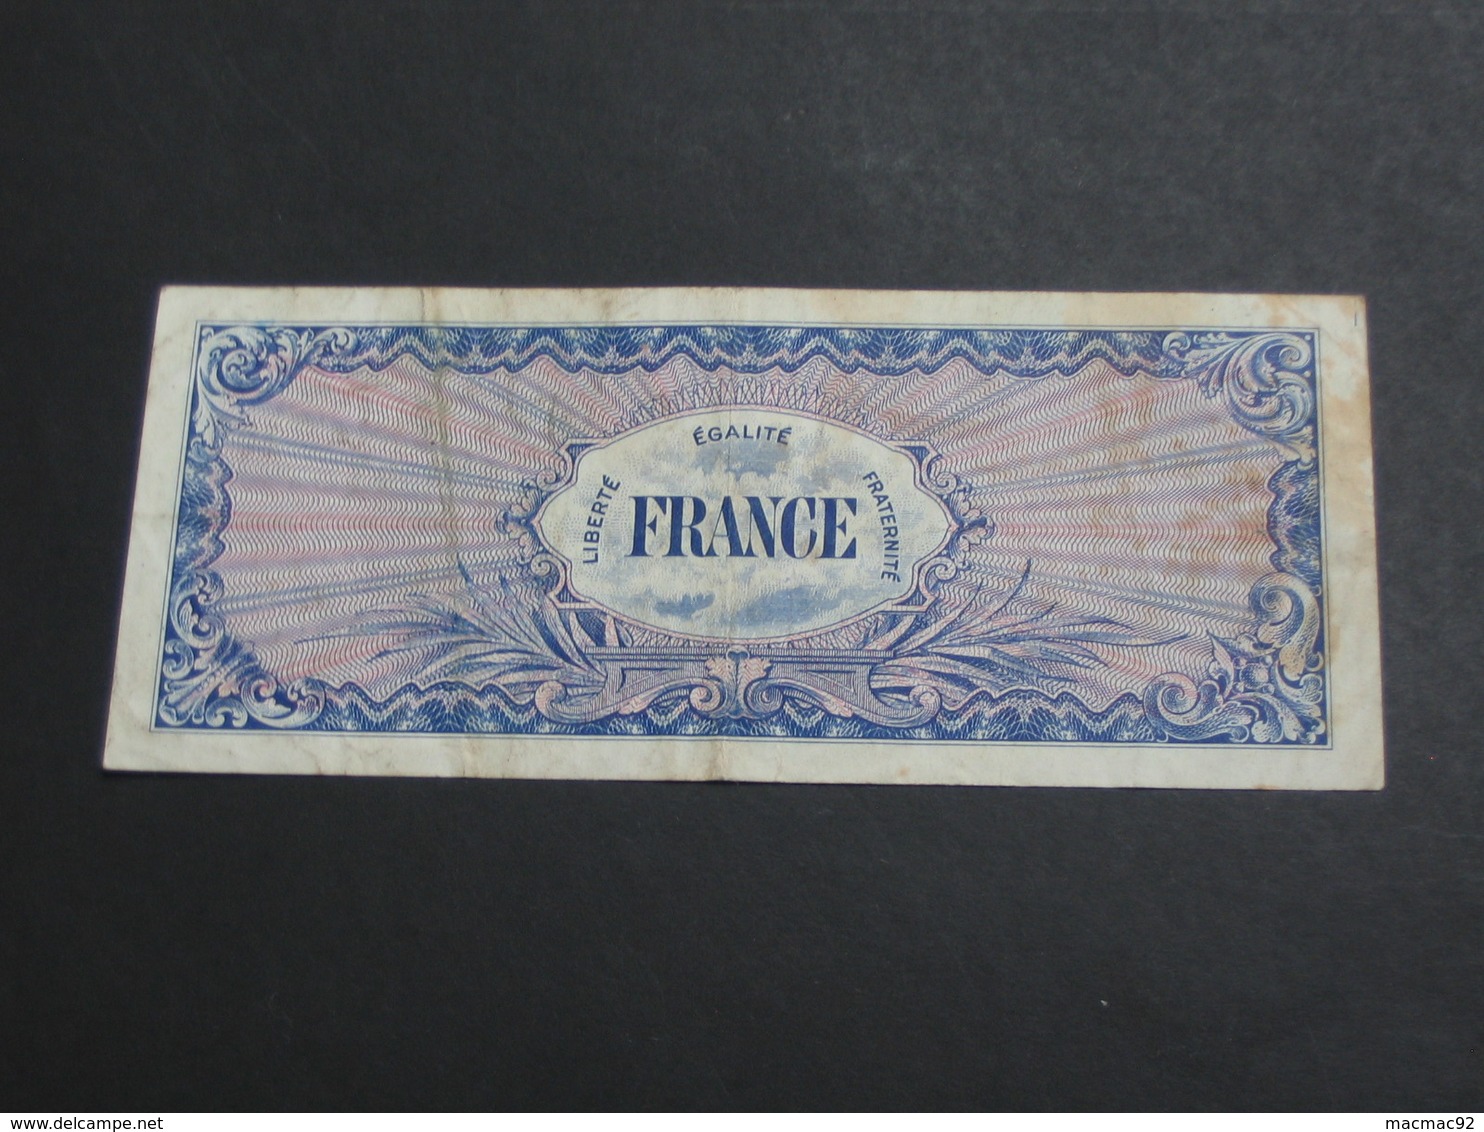 100 Francs - FRANCE - Série 10 ( RARE !!!!) - Billet Du Débarquement - 4 Juin 1945  **** EN ACHAT IMMÉDIAT **** - 1945 Verso Francia